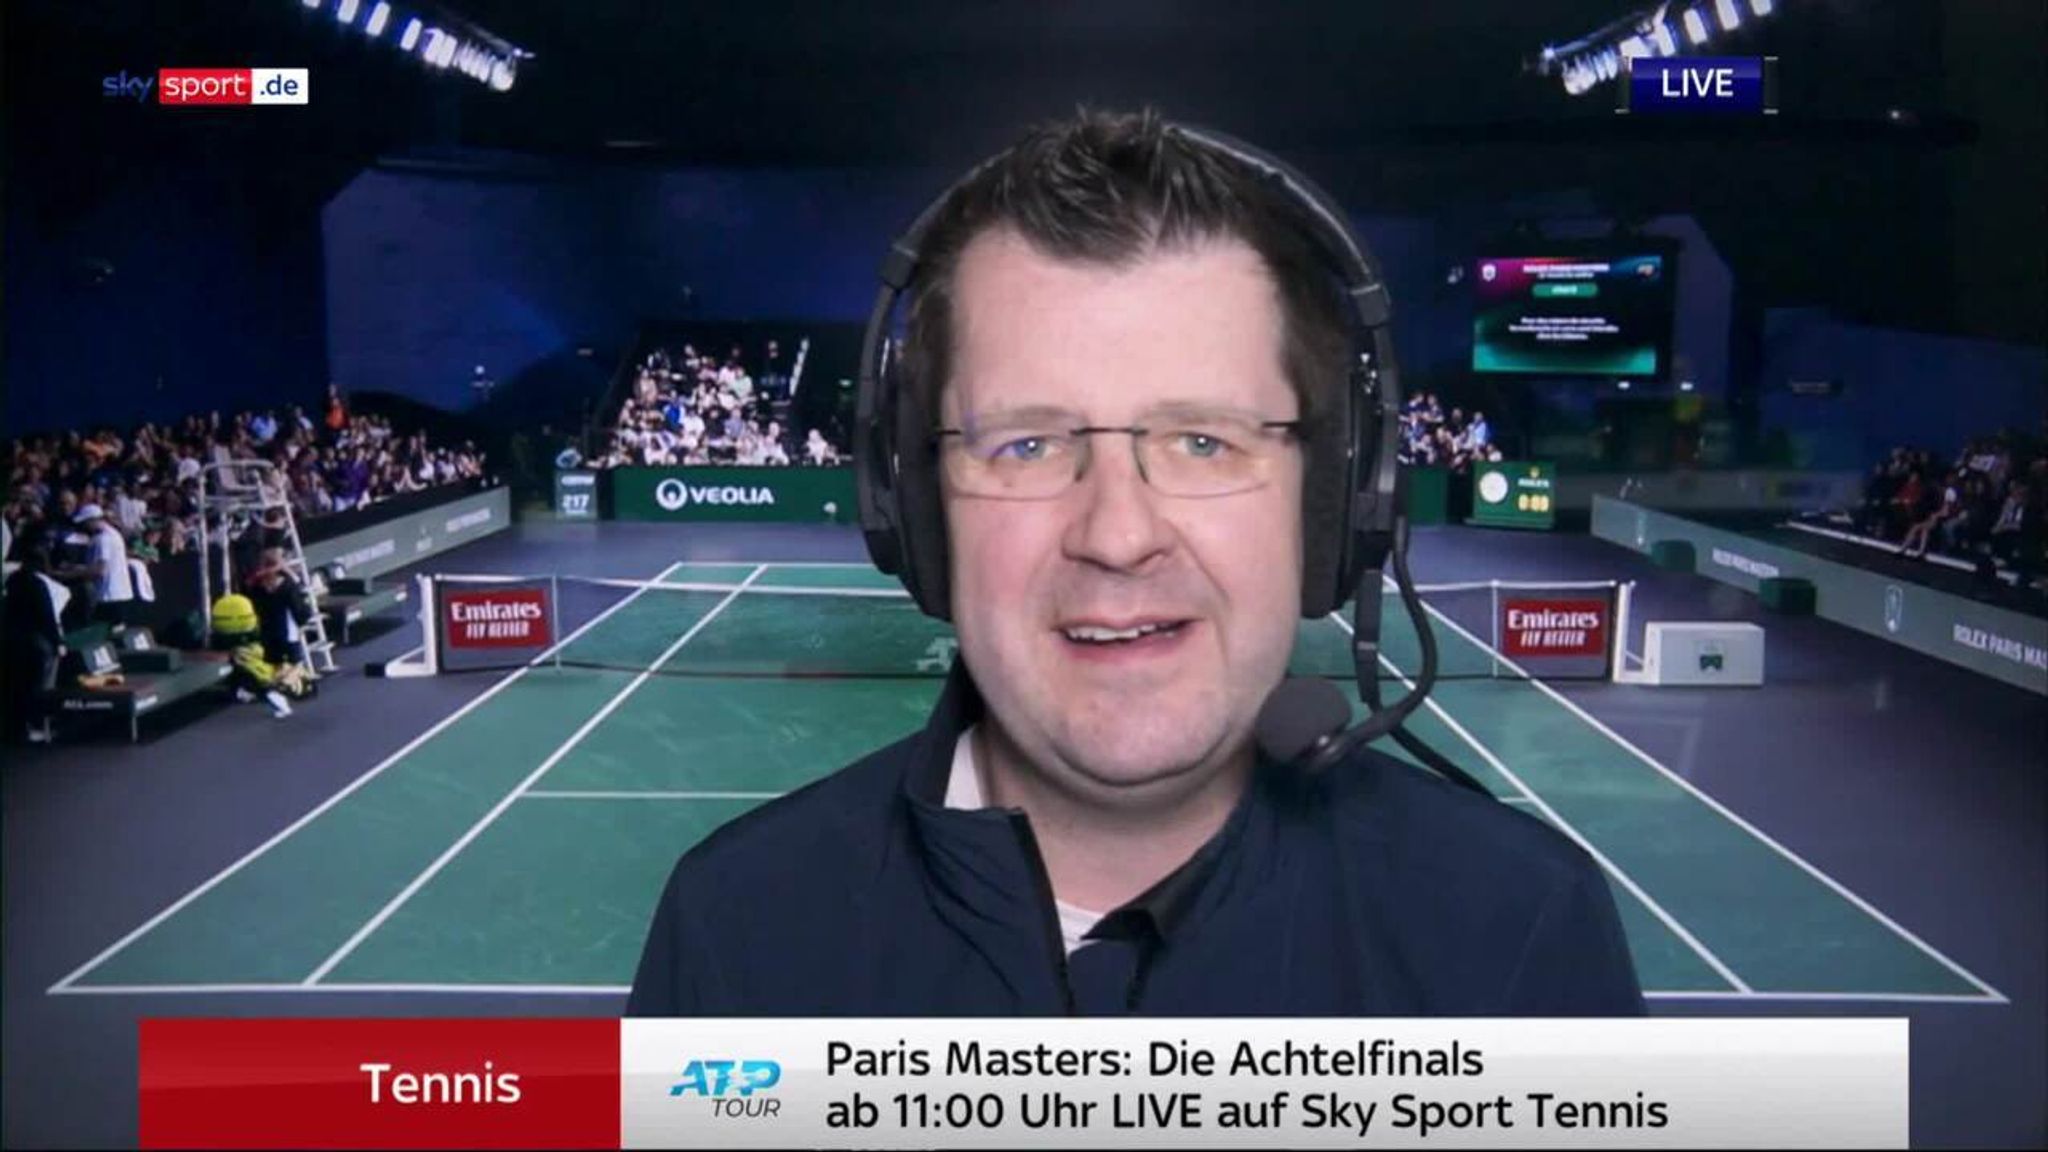 Tennis Das erwartet die Zuschauer an Tag 4 bei den Paris Masters Tennis News Sky Sport